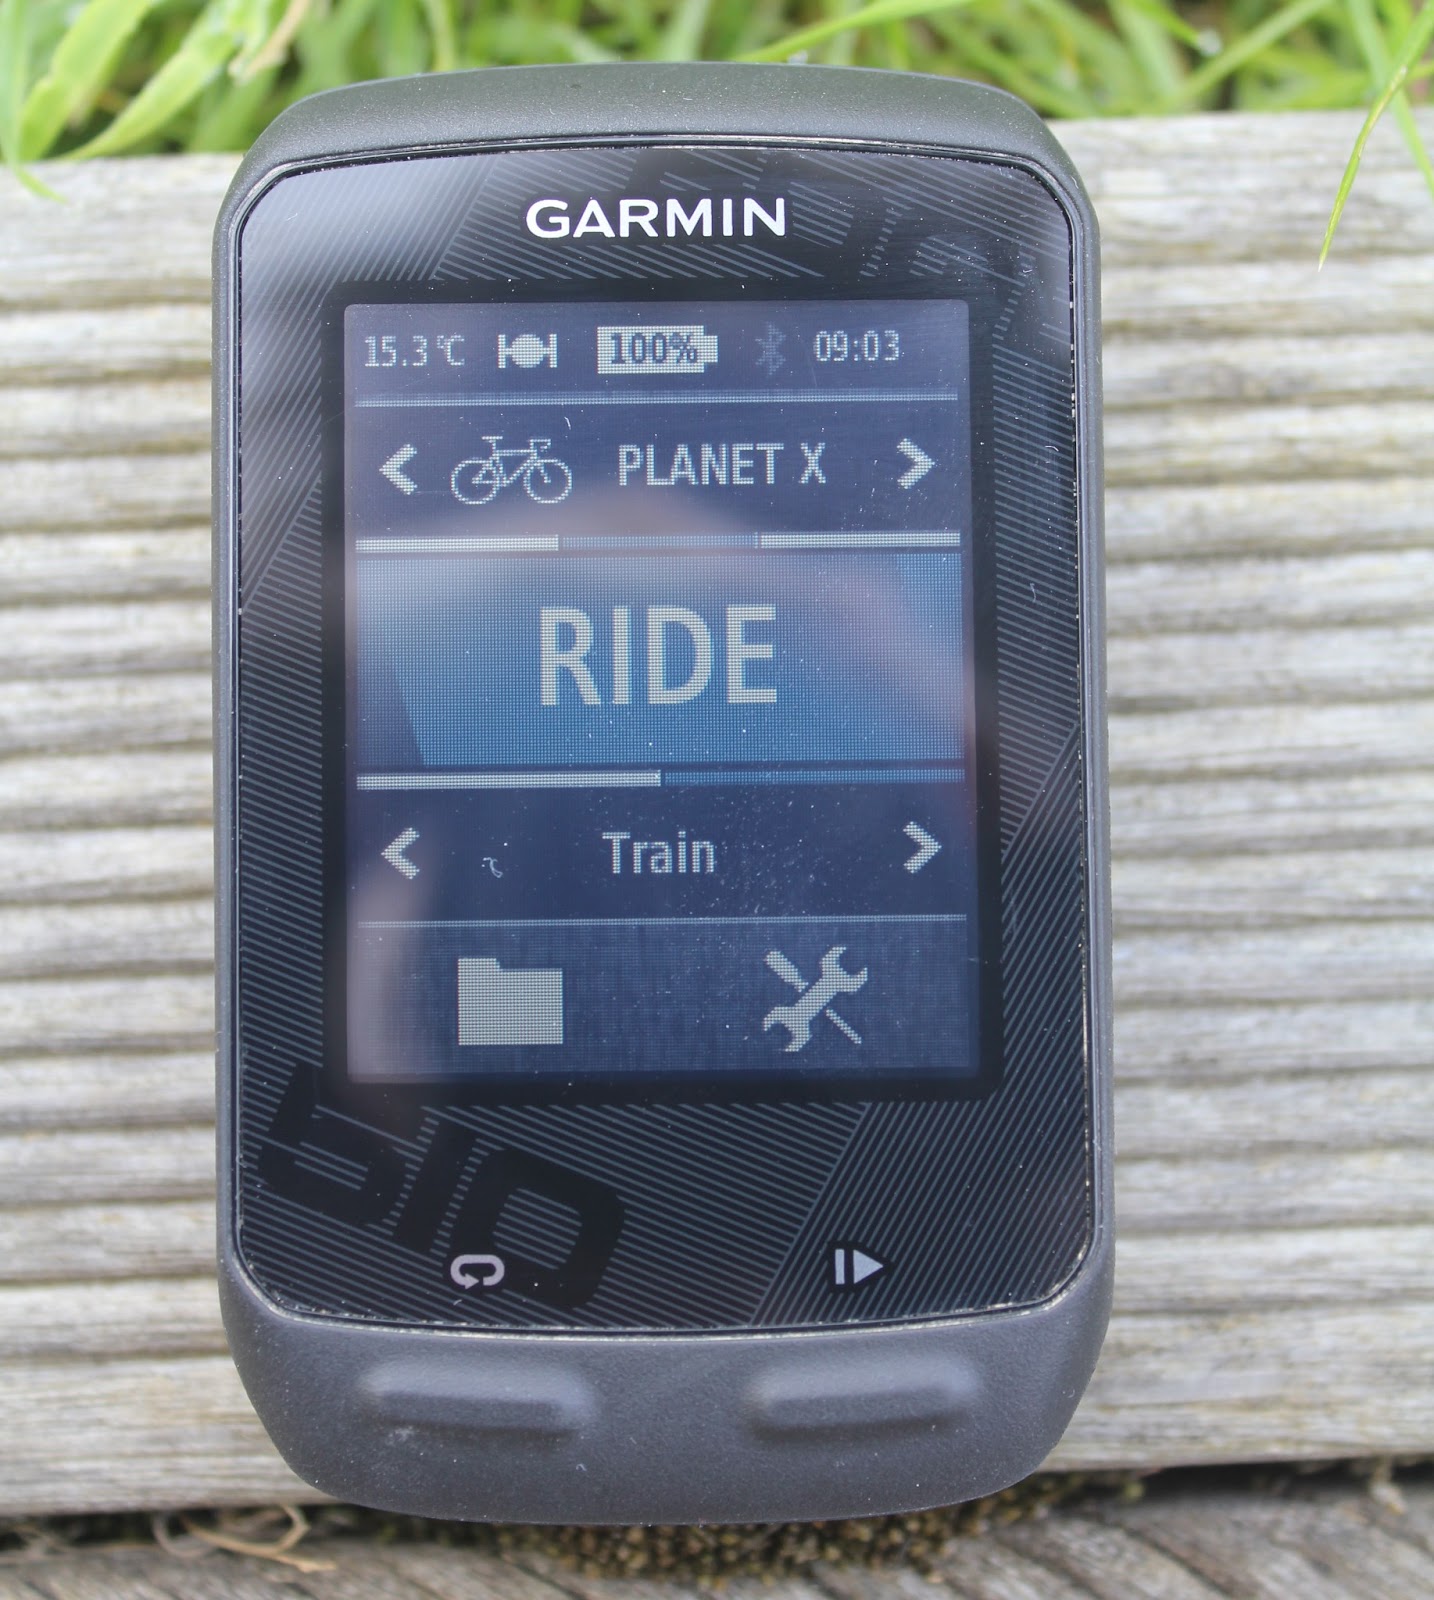 lens verteren ik ben slaperig Review: Garmin Edge 510 GPS Cycle Computer